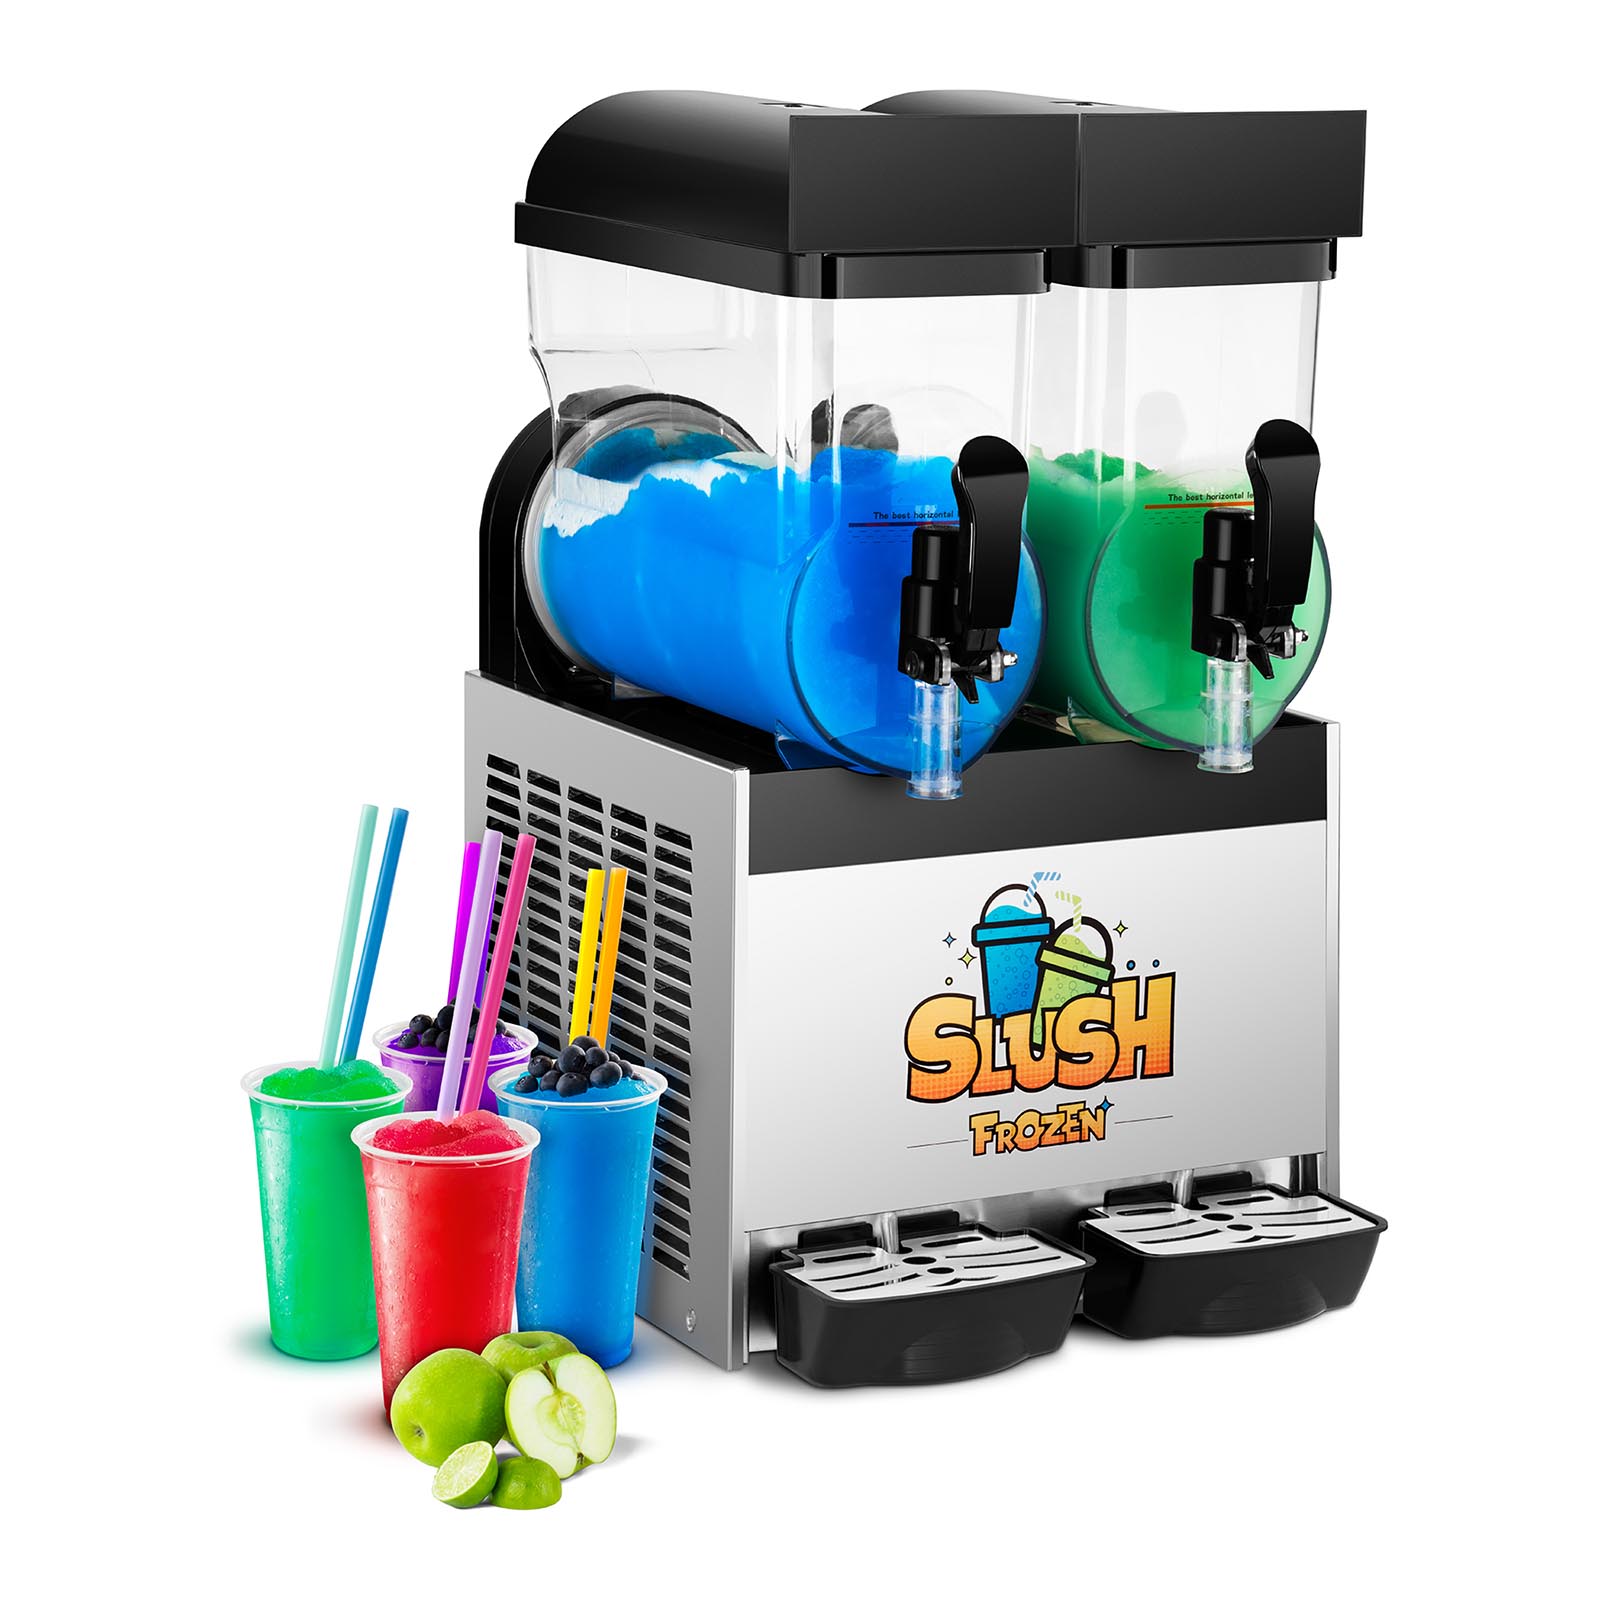 Slush-Maschine - 2 x 15 Liter